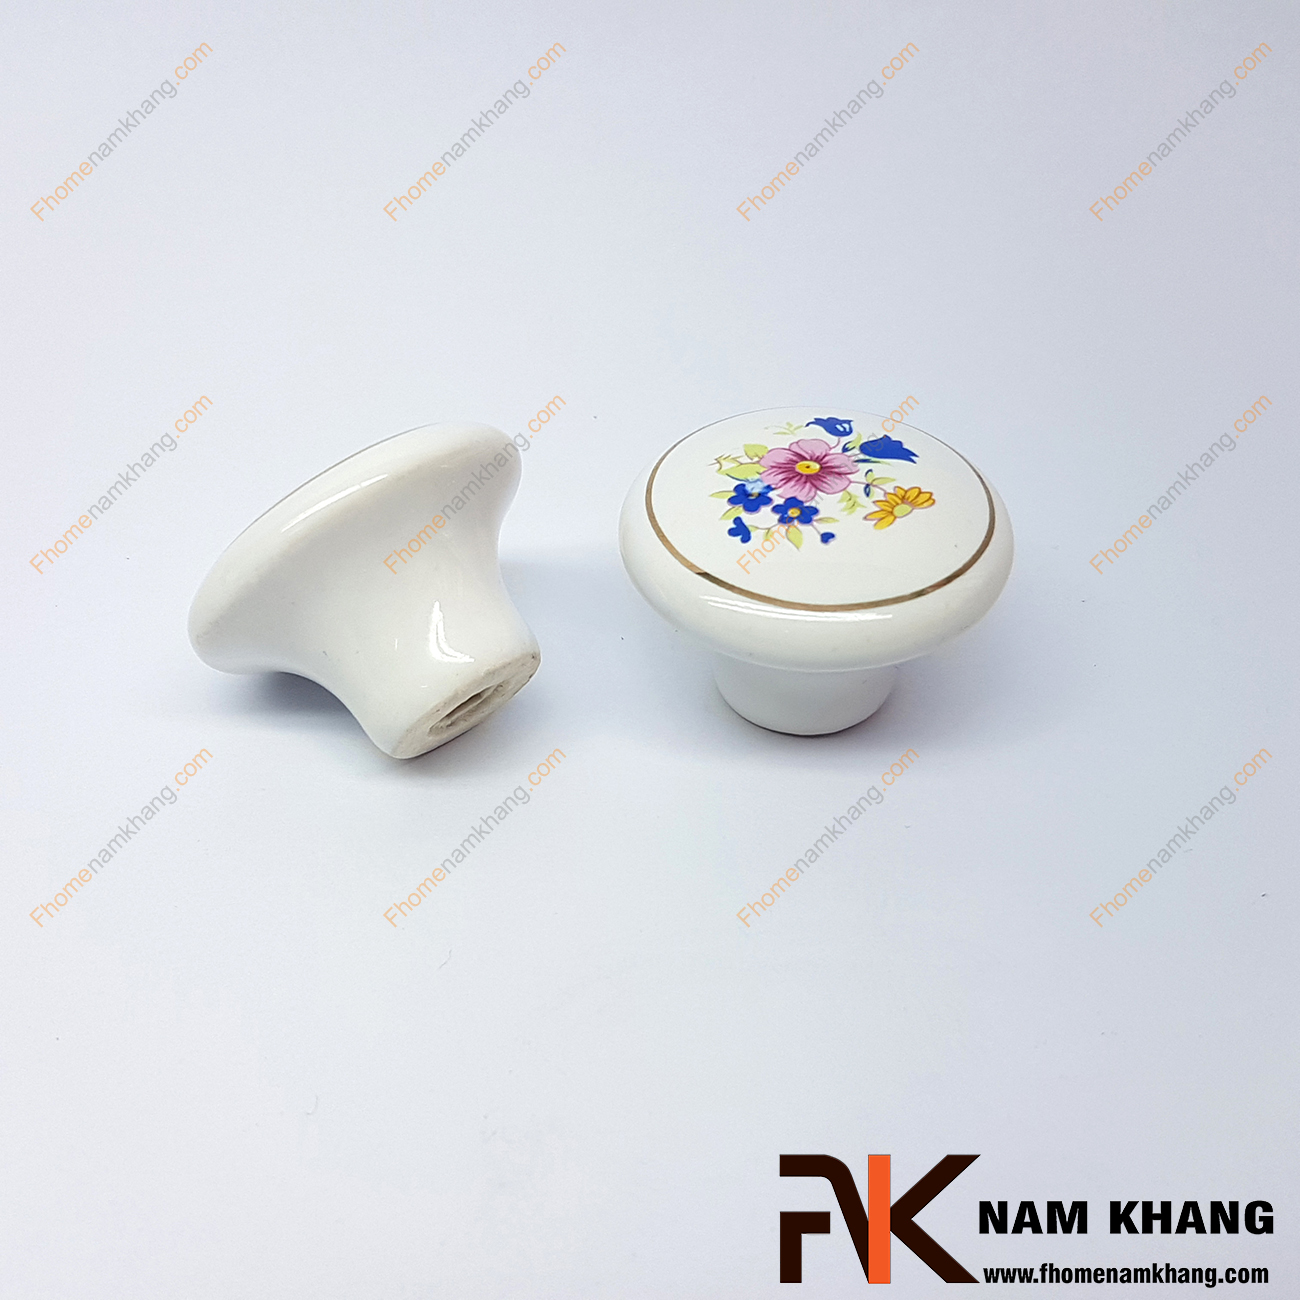 Núm nắm tủ sứ NK302 là một dạng núm nắm tủ bằng sứ trắng rất quen thuộc.